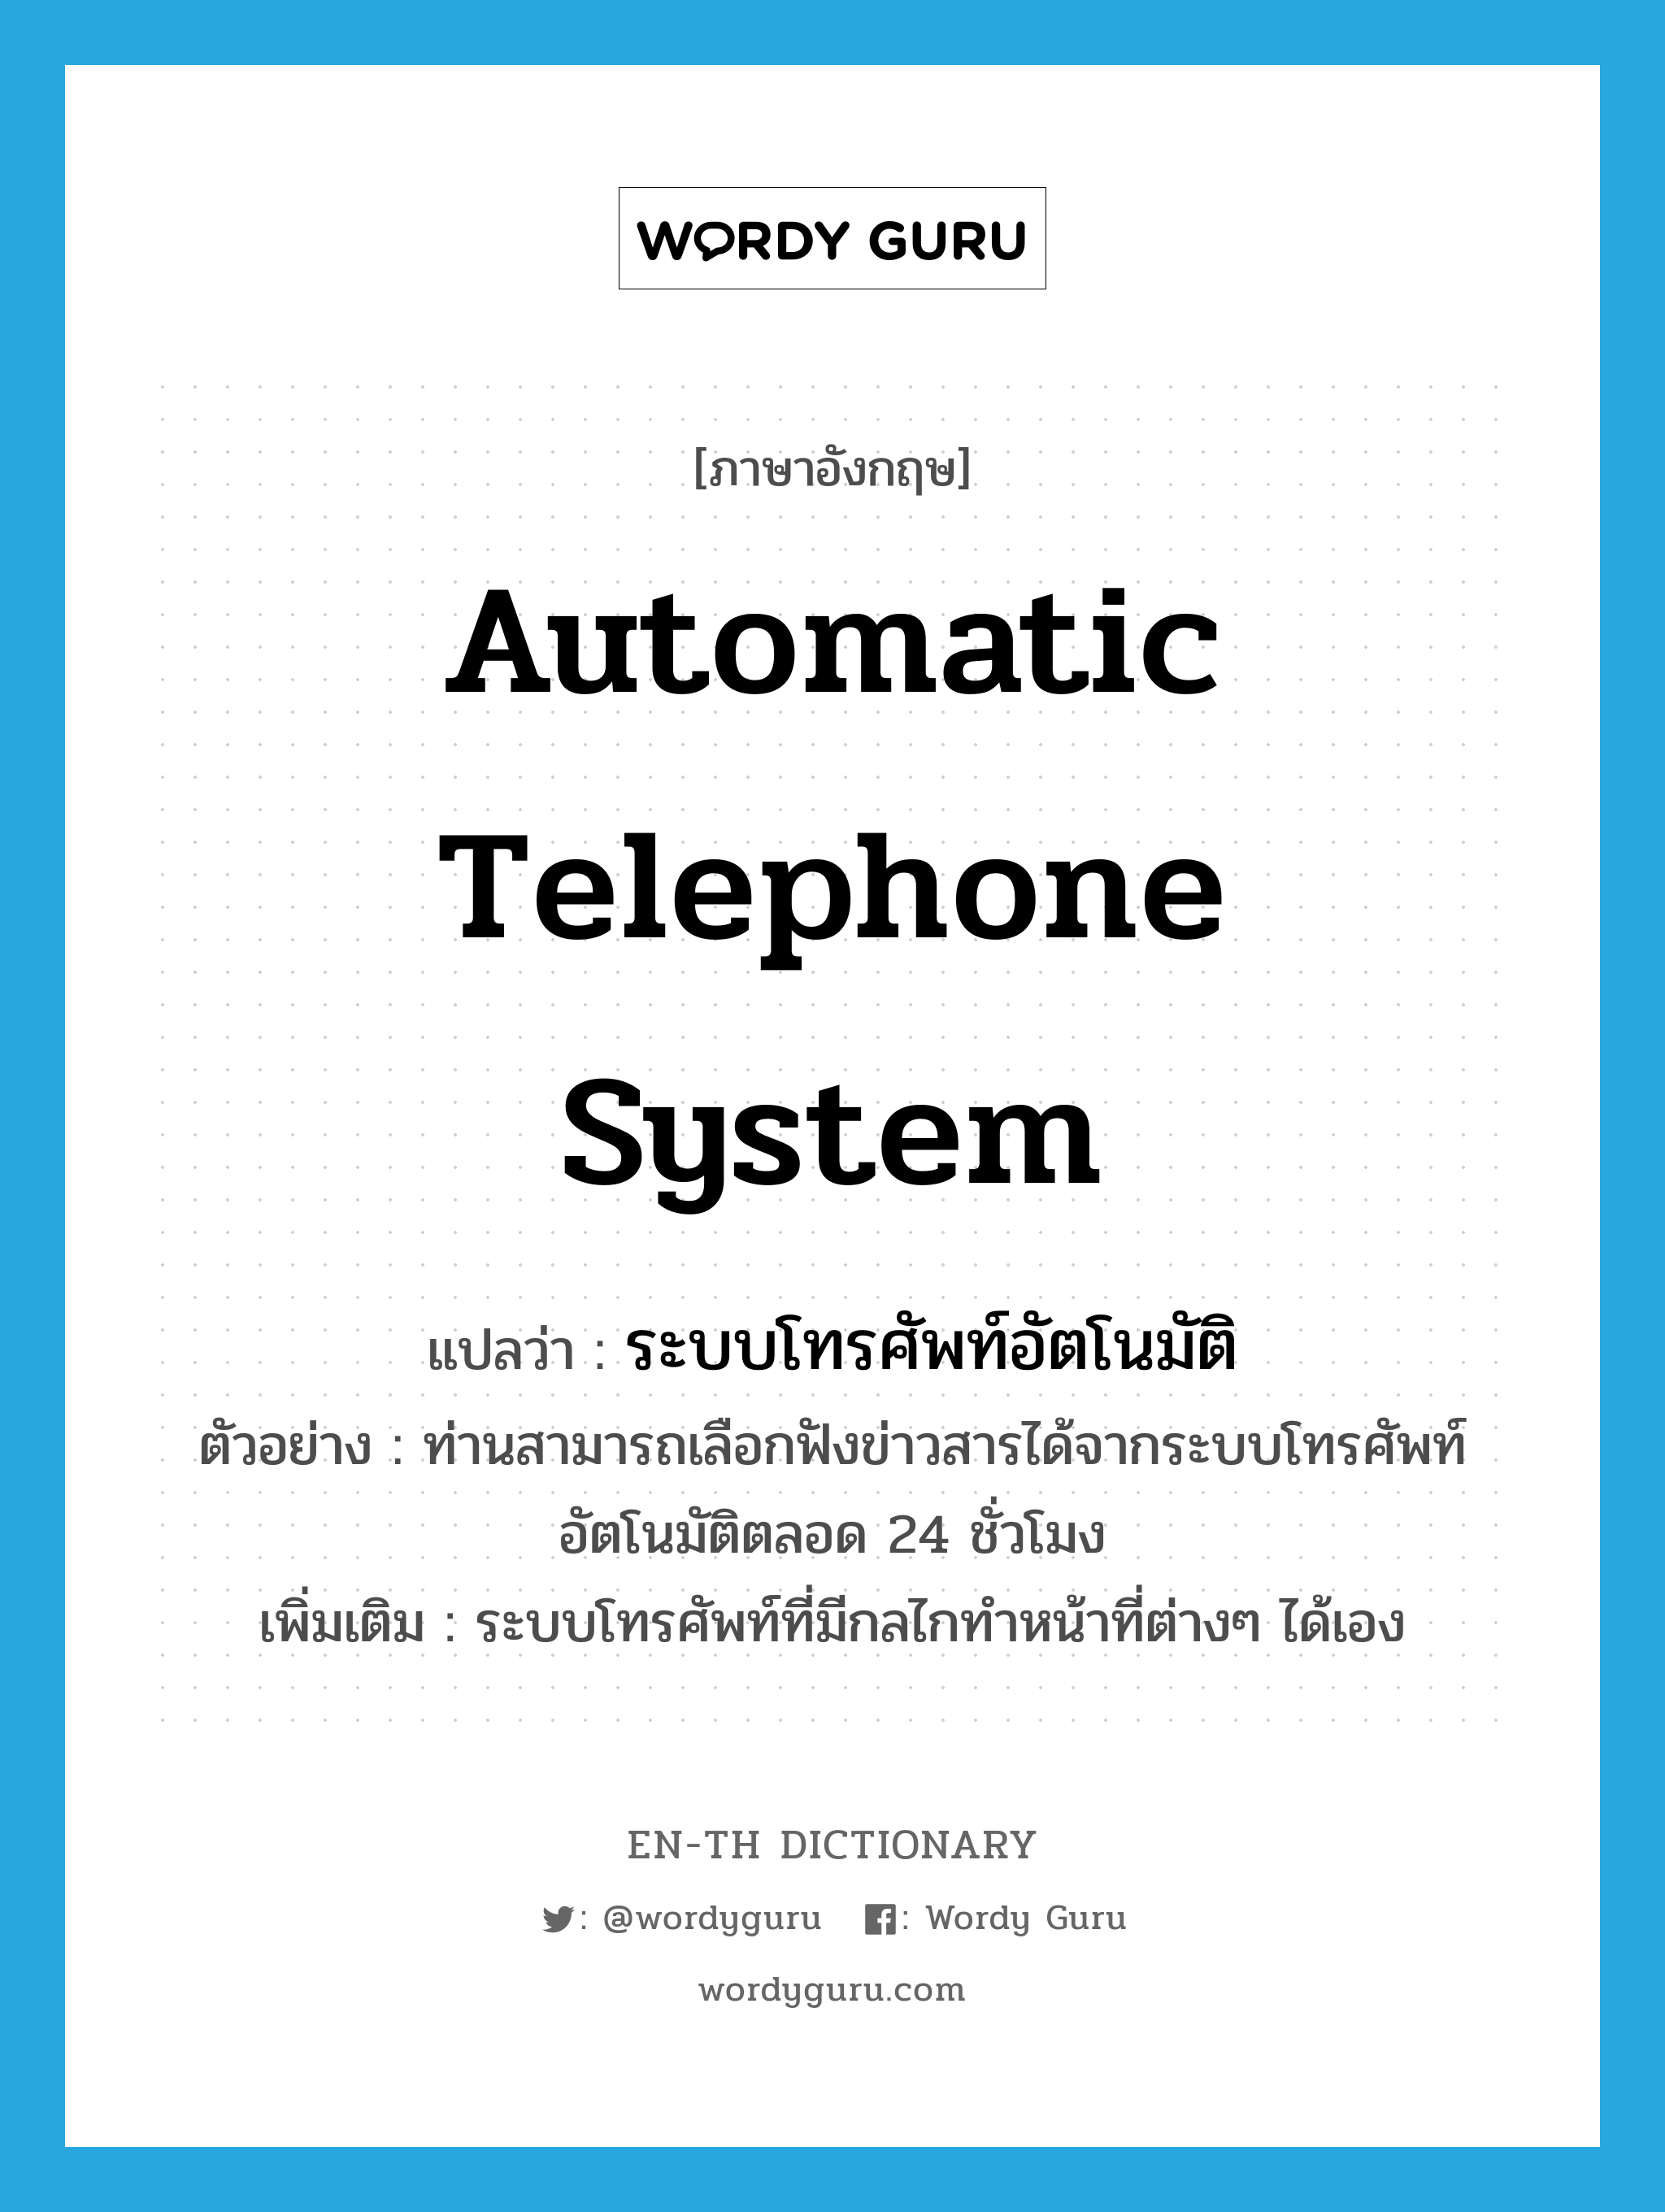 automatic telephone system แปลว่า?, คำศัพท์ภาษาอังกฤษ automatic telephone system แปลว่า ระบบโทรศัพท์อัตโนมัติ ประเภท N ตัวอย่าง ท่านสามารถเลือกฟังข่าวสารได้จากระบบโทรศัพท์อัตโนมัติตลอด 24 ชั่วโมง เพิ่มเติม ระบบโทรศัพท์ที่มีกลไกทำหน้าที่ต่างๆ ได้เอง หมวด N